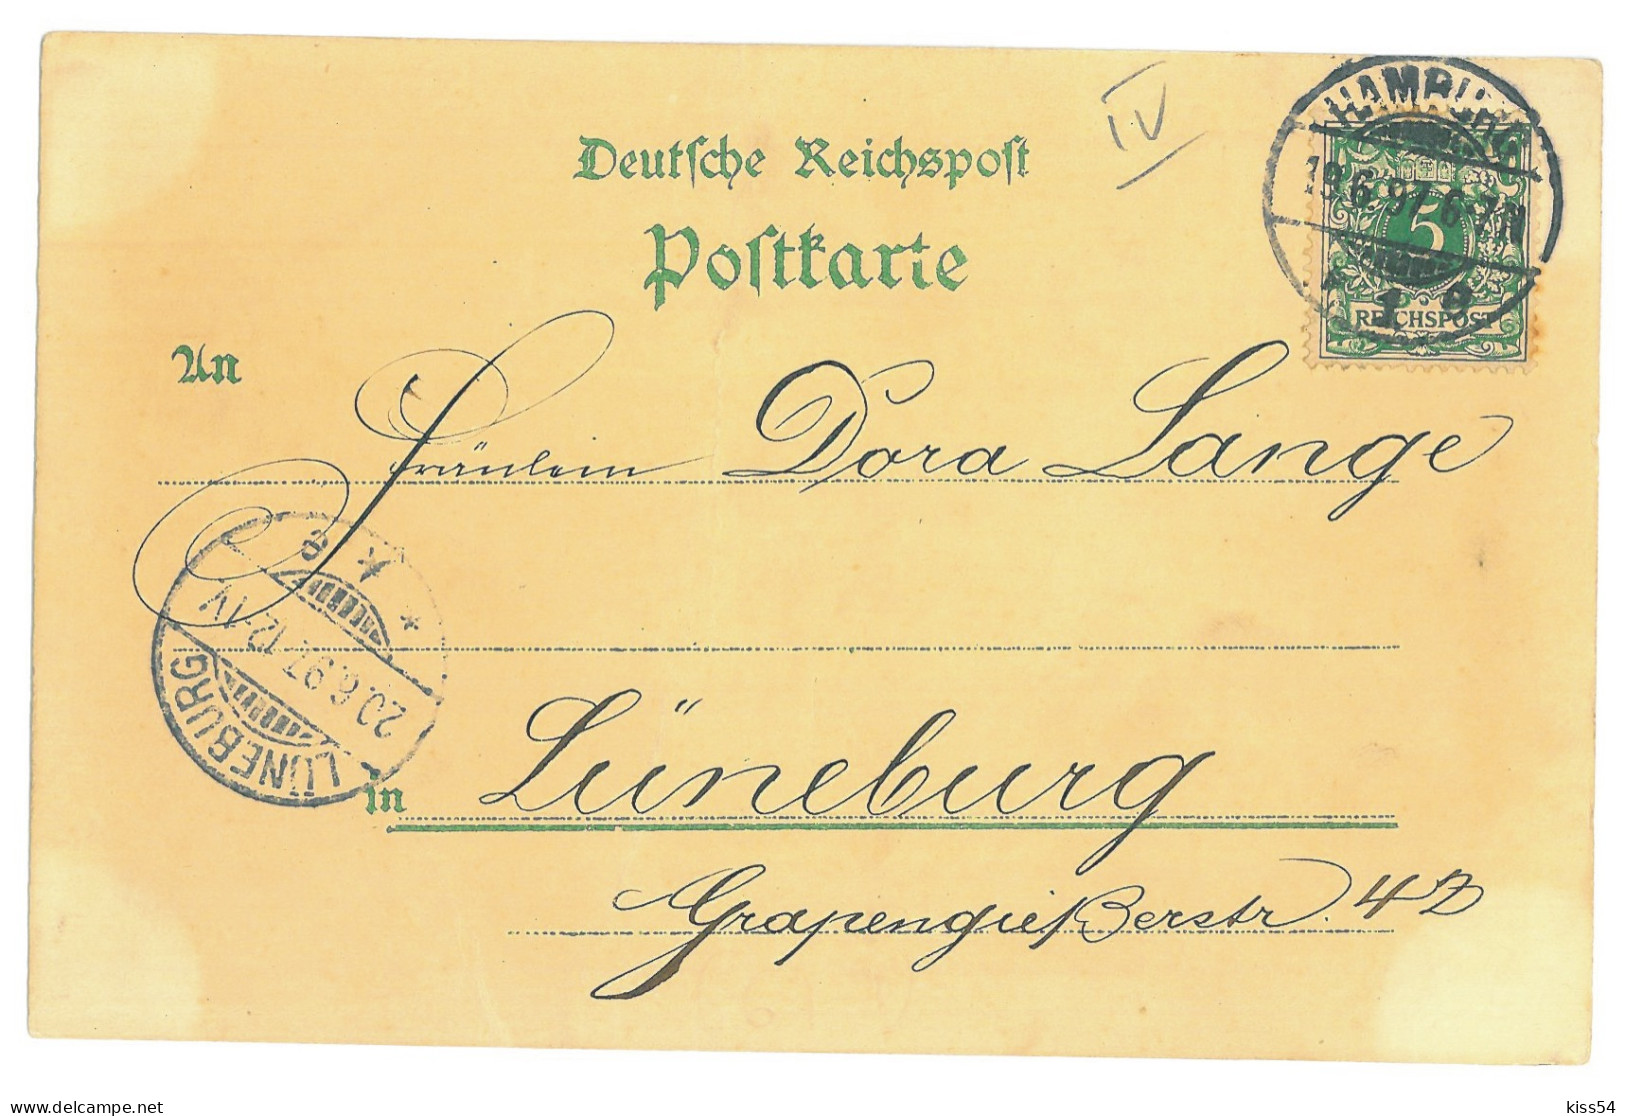 GER 03 - 16927 HAMBURG, Litho, Germany - Old Postcard - Used - 1897 - Harburg